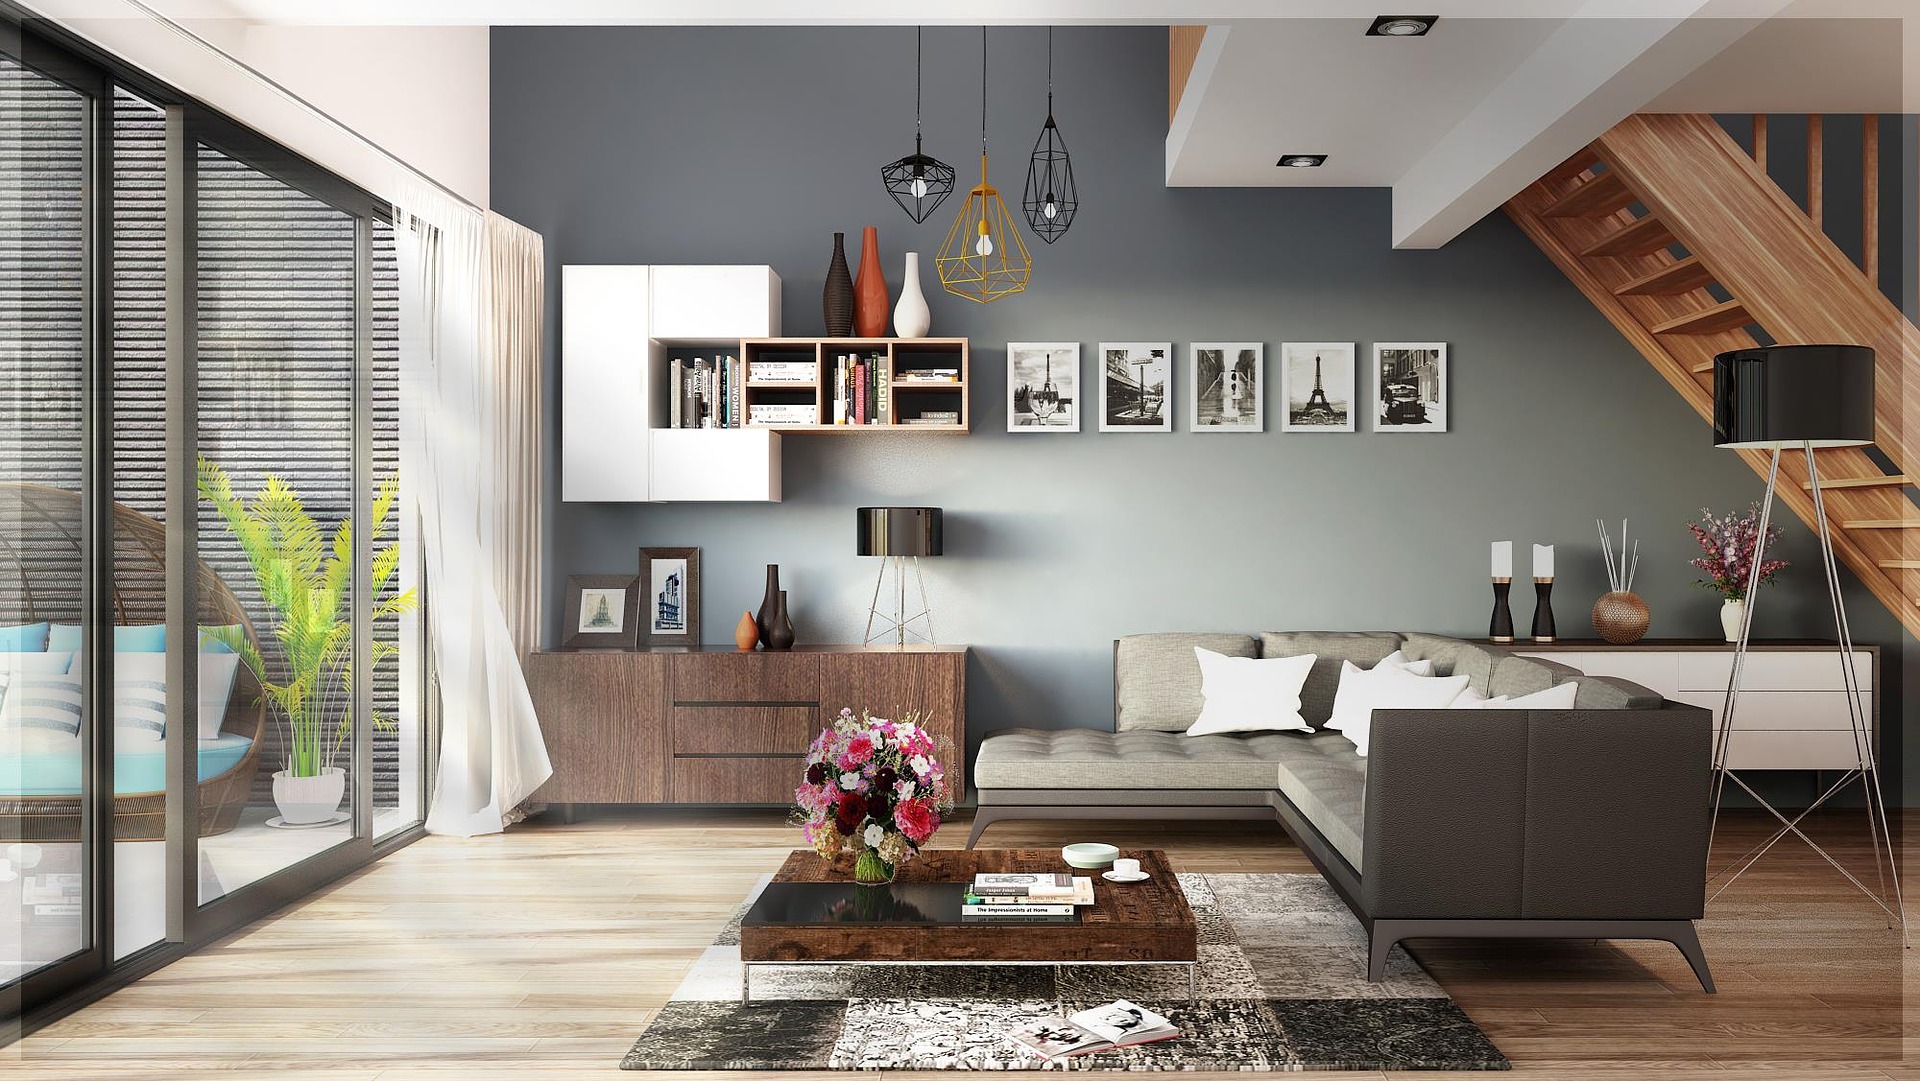 Reforma de vivienda combinación colores grises y madera